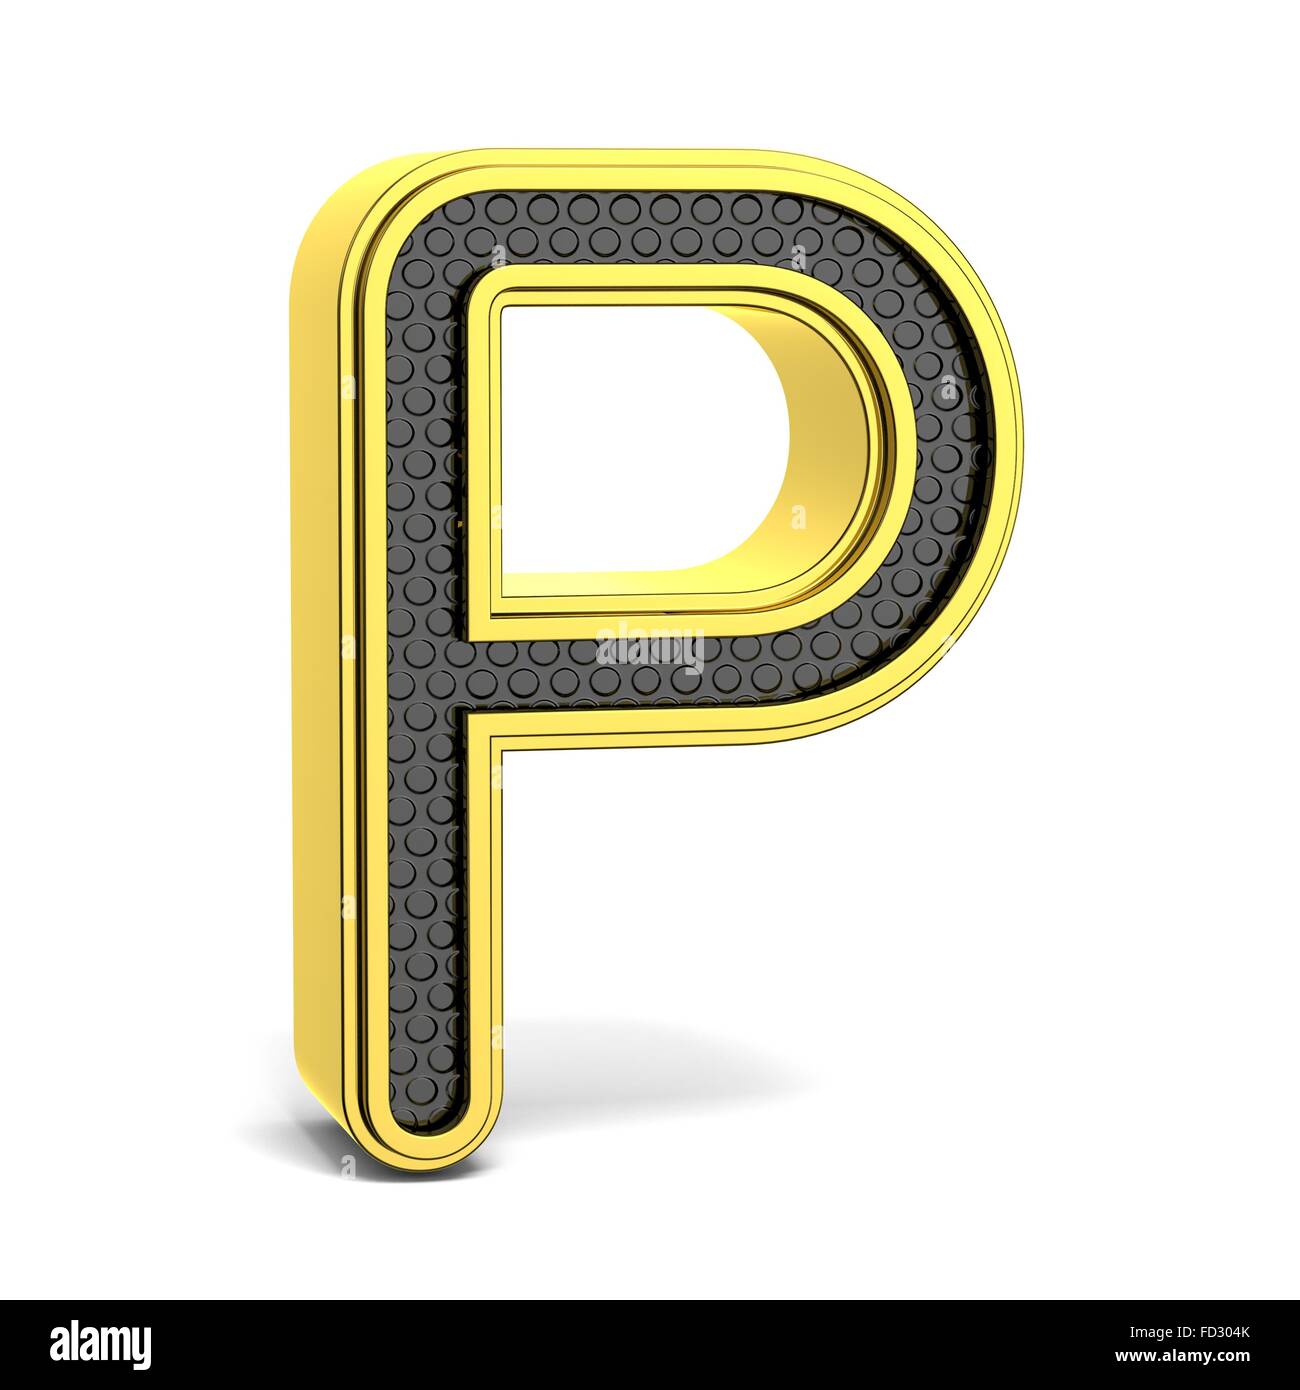 Goldene und schwarze Runde Alphabet. Buchstaben p. 3D render Abbildung isoliert auf weißem Hintergrund mit weichen Schatten Stockfoto